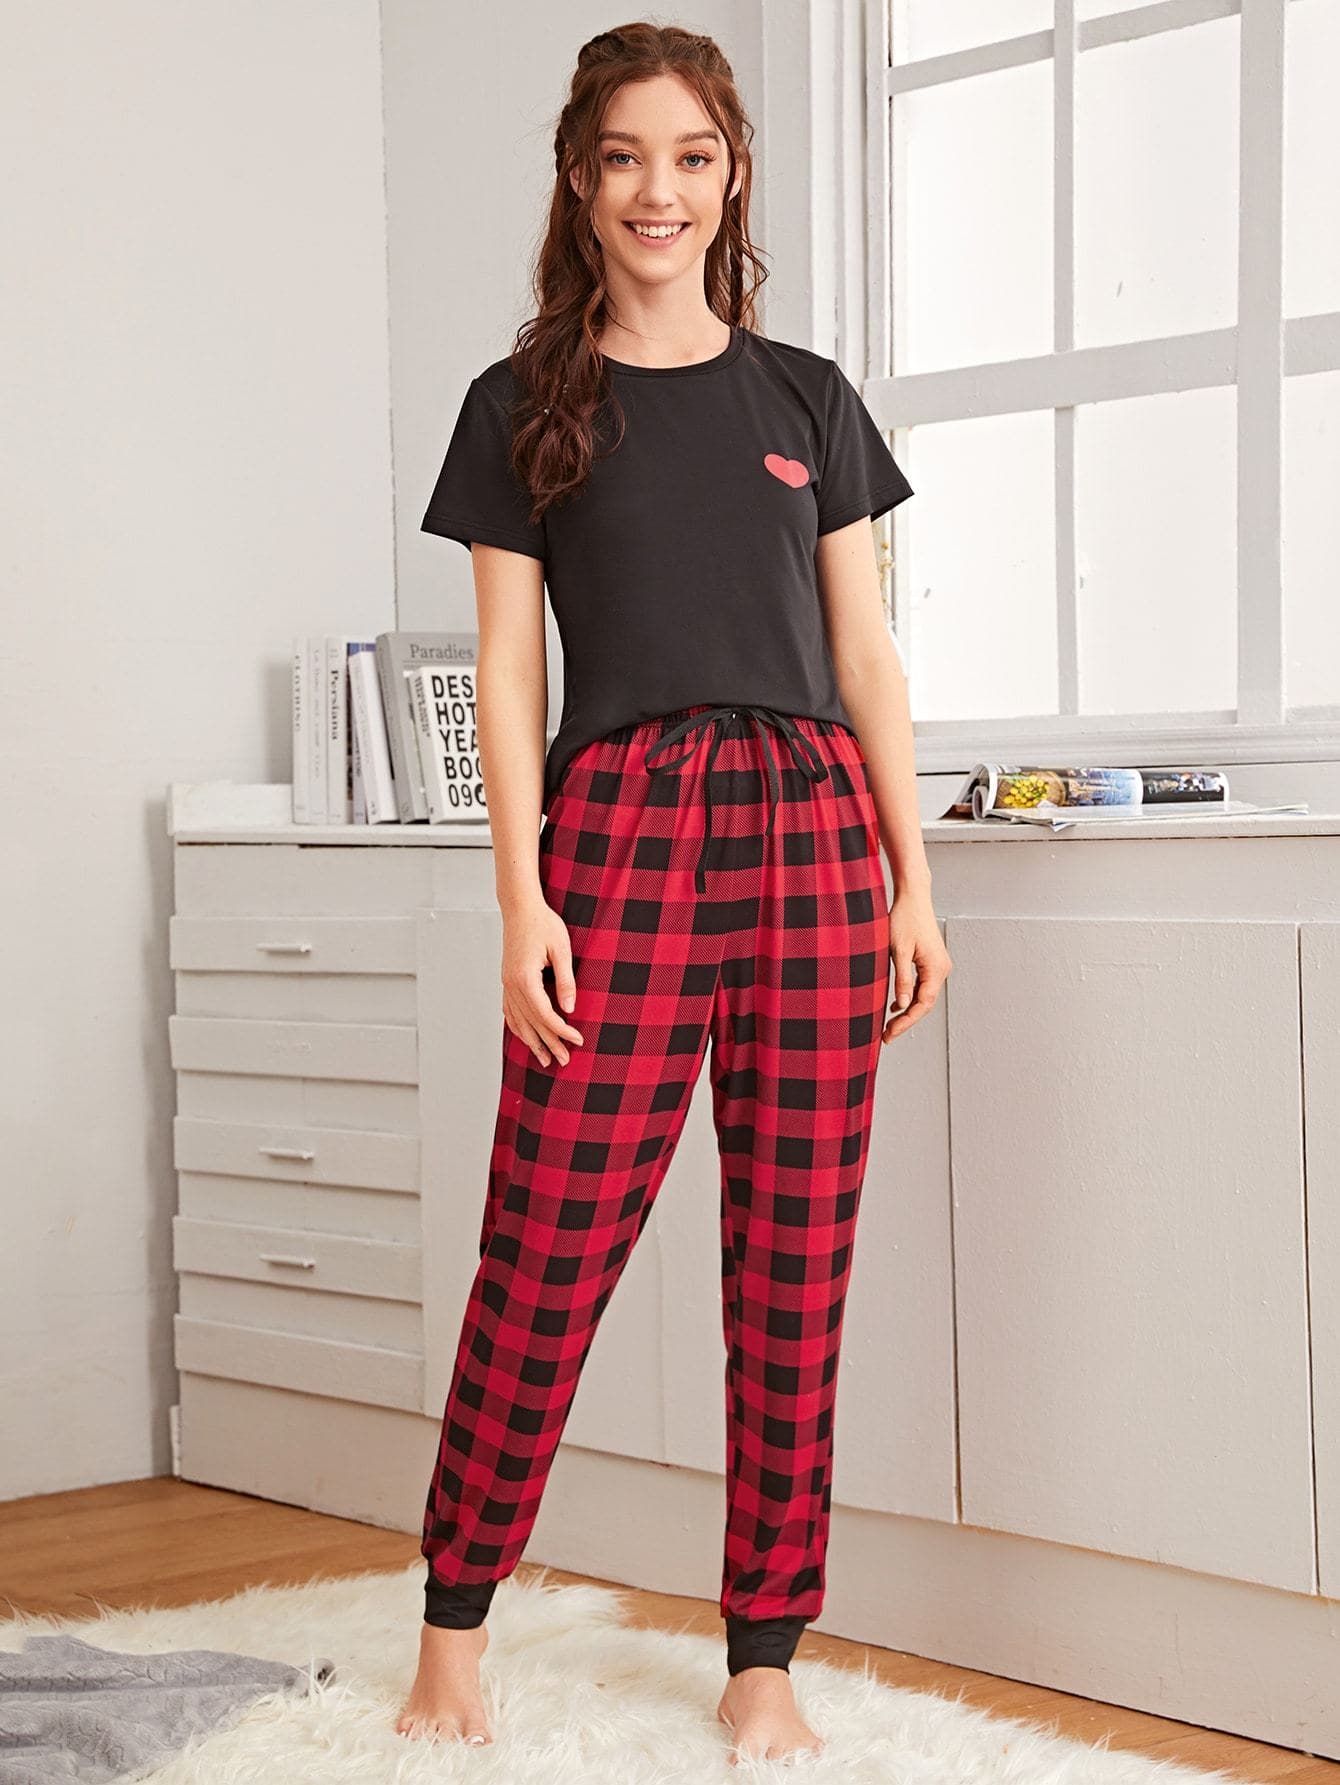 Buffalo Plaid and Heart Print Pyjama Sleepwear Set